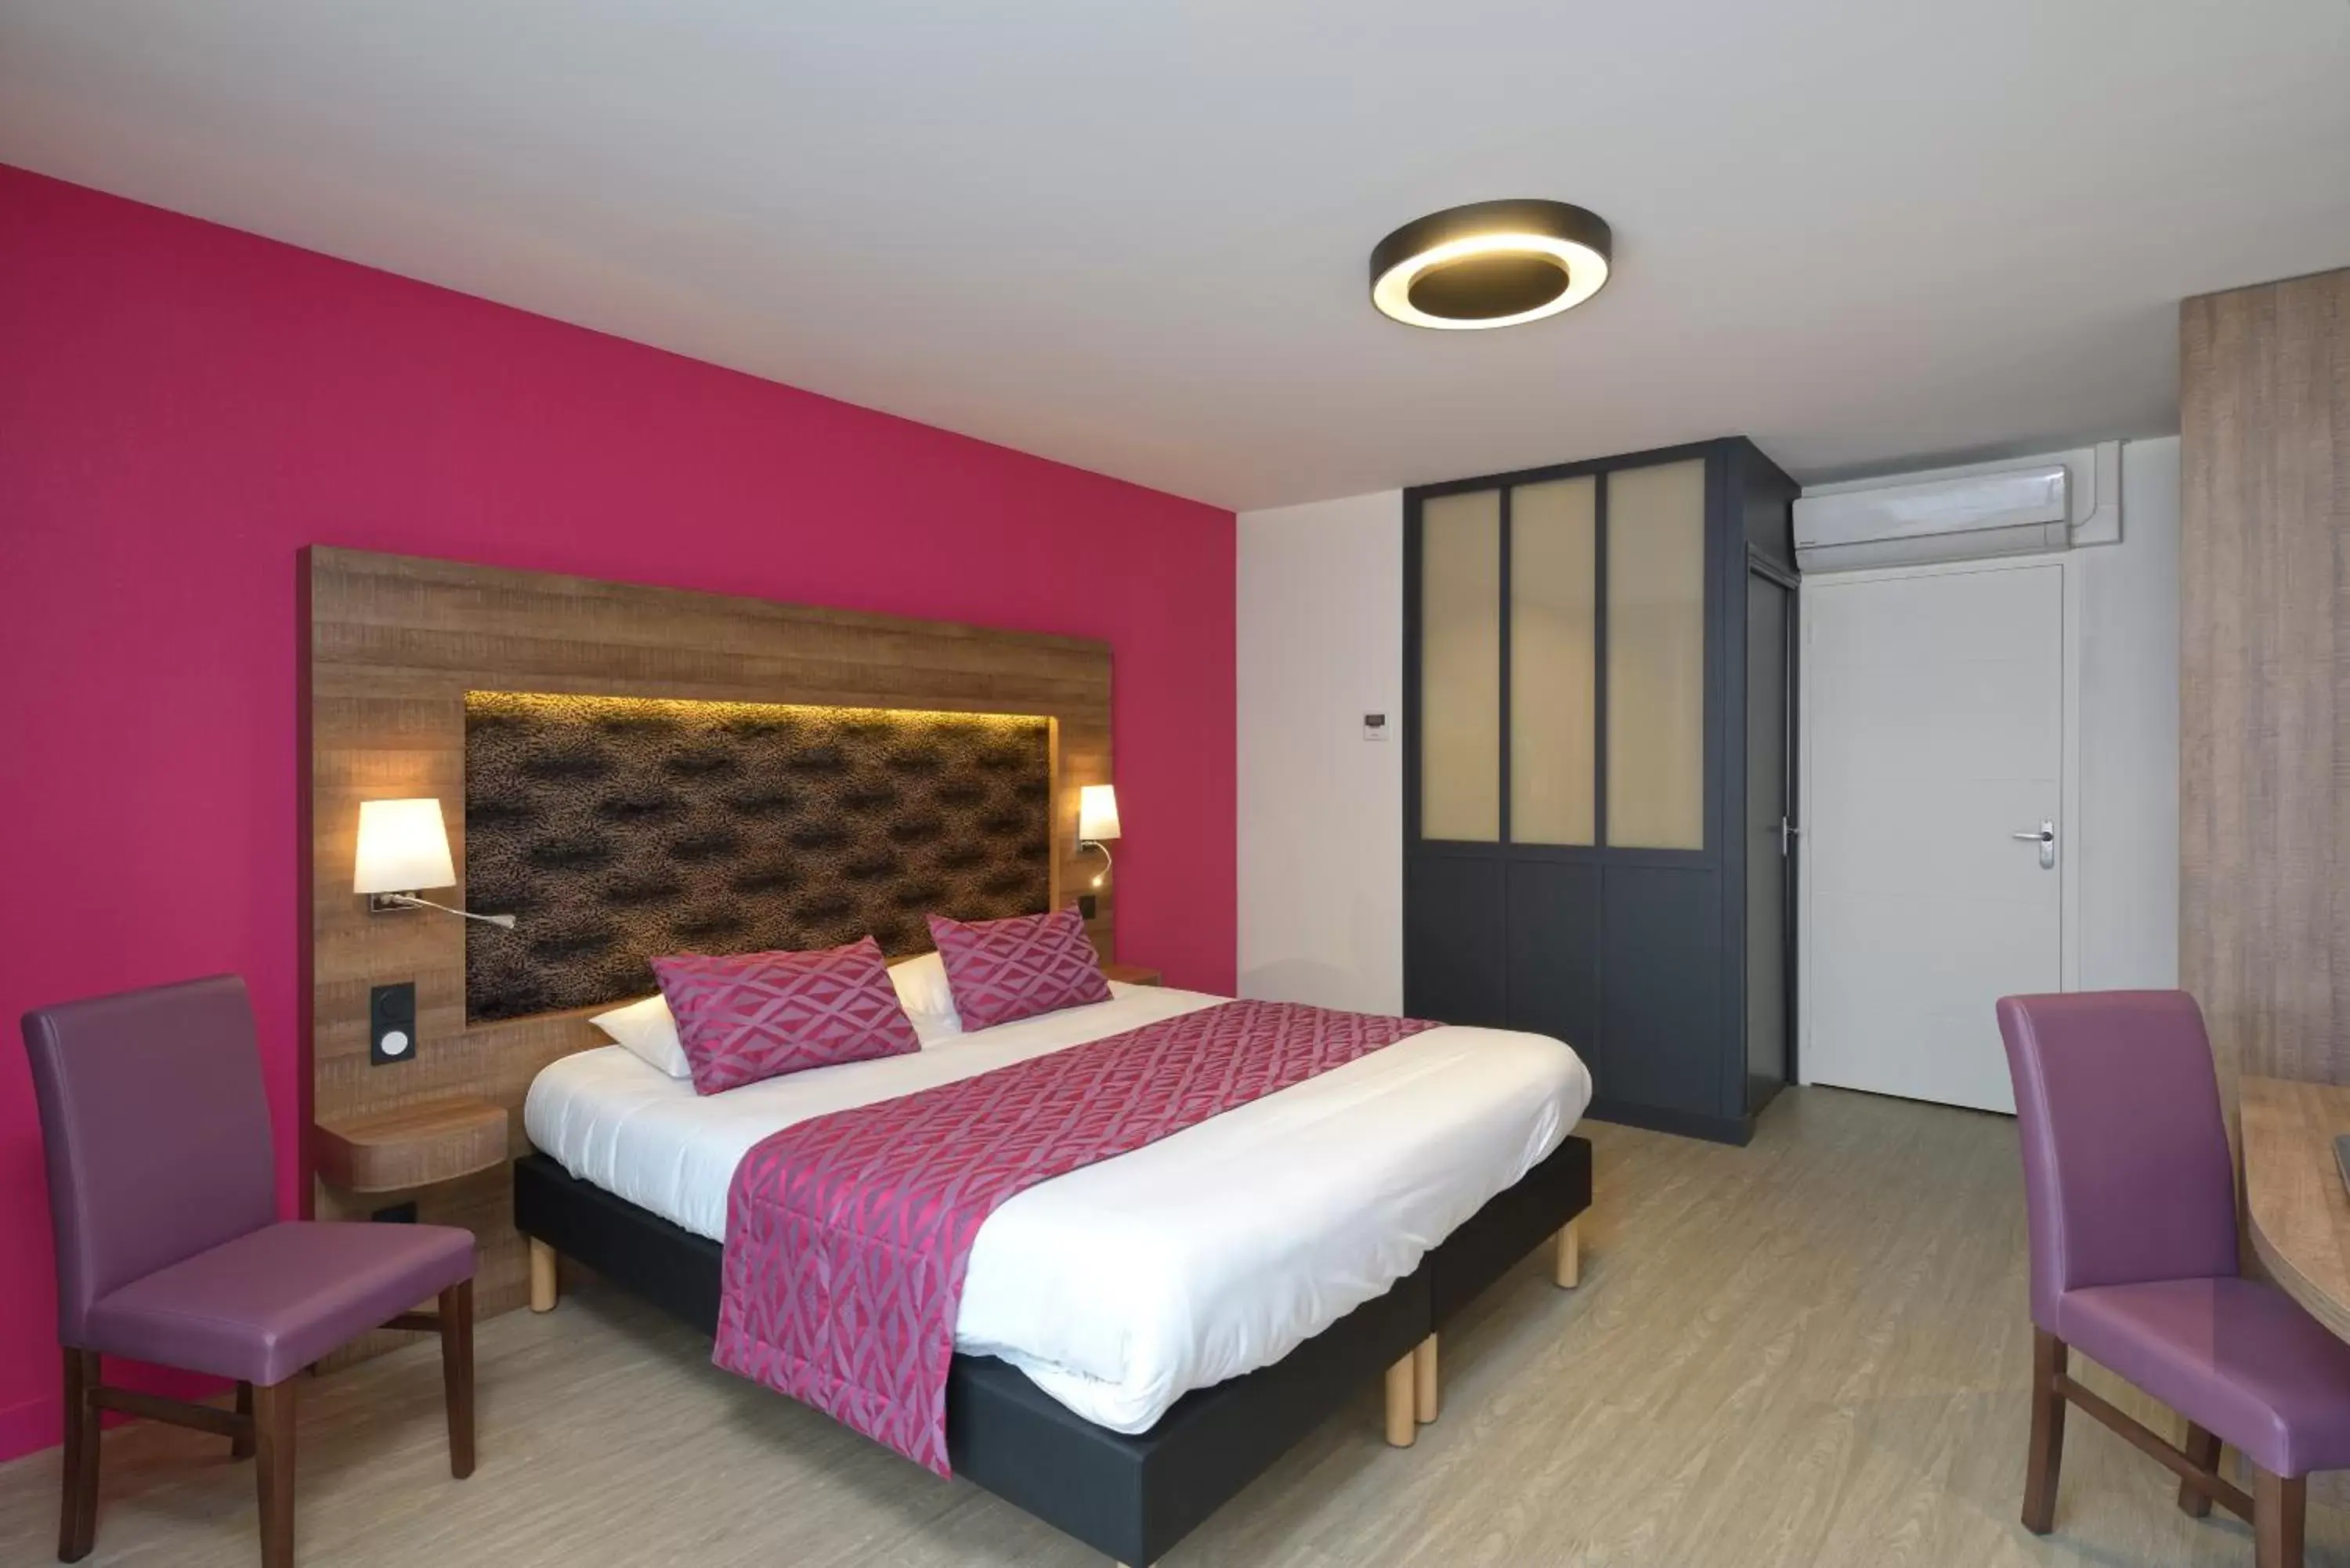 Bed, Room Photo in The Originals Boutique, Hôtel Le Lion d'Or, Fougères Ouest (Inter-Hotel)